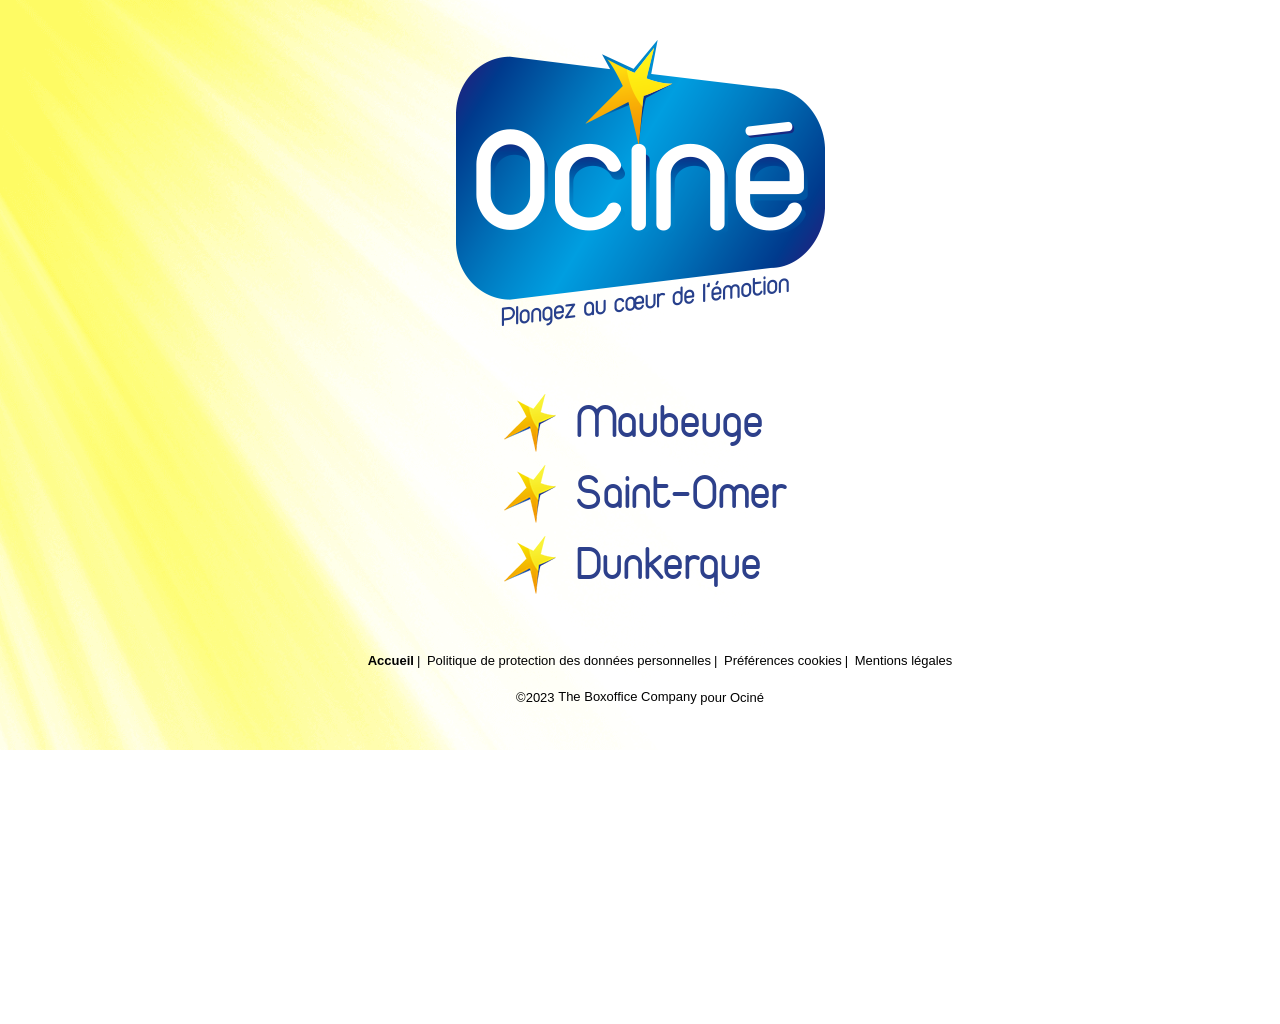 www.ocine.fr